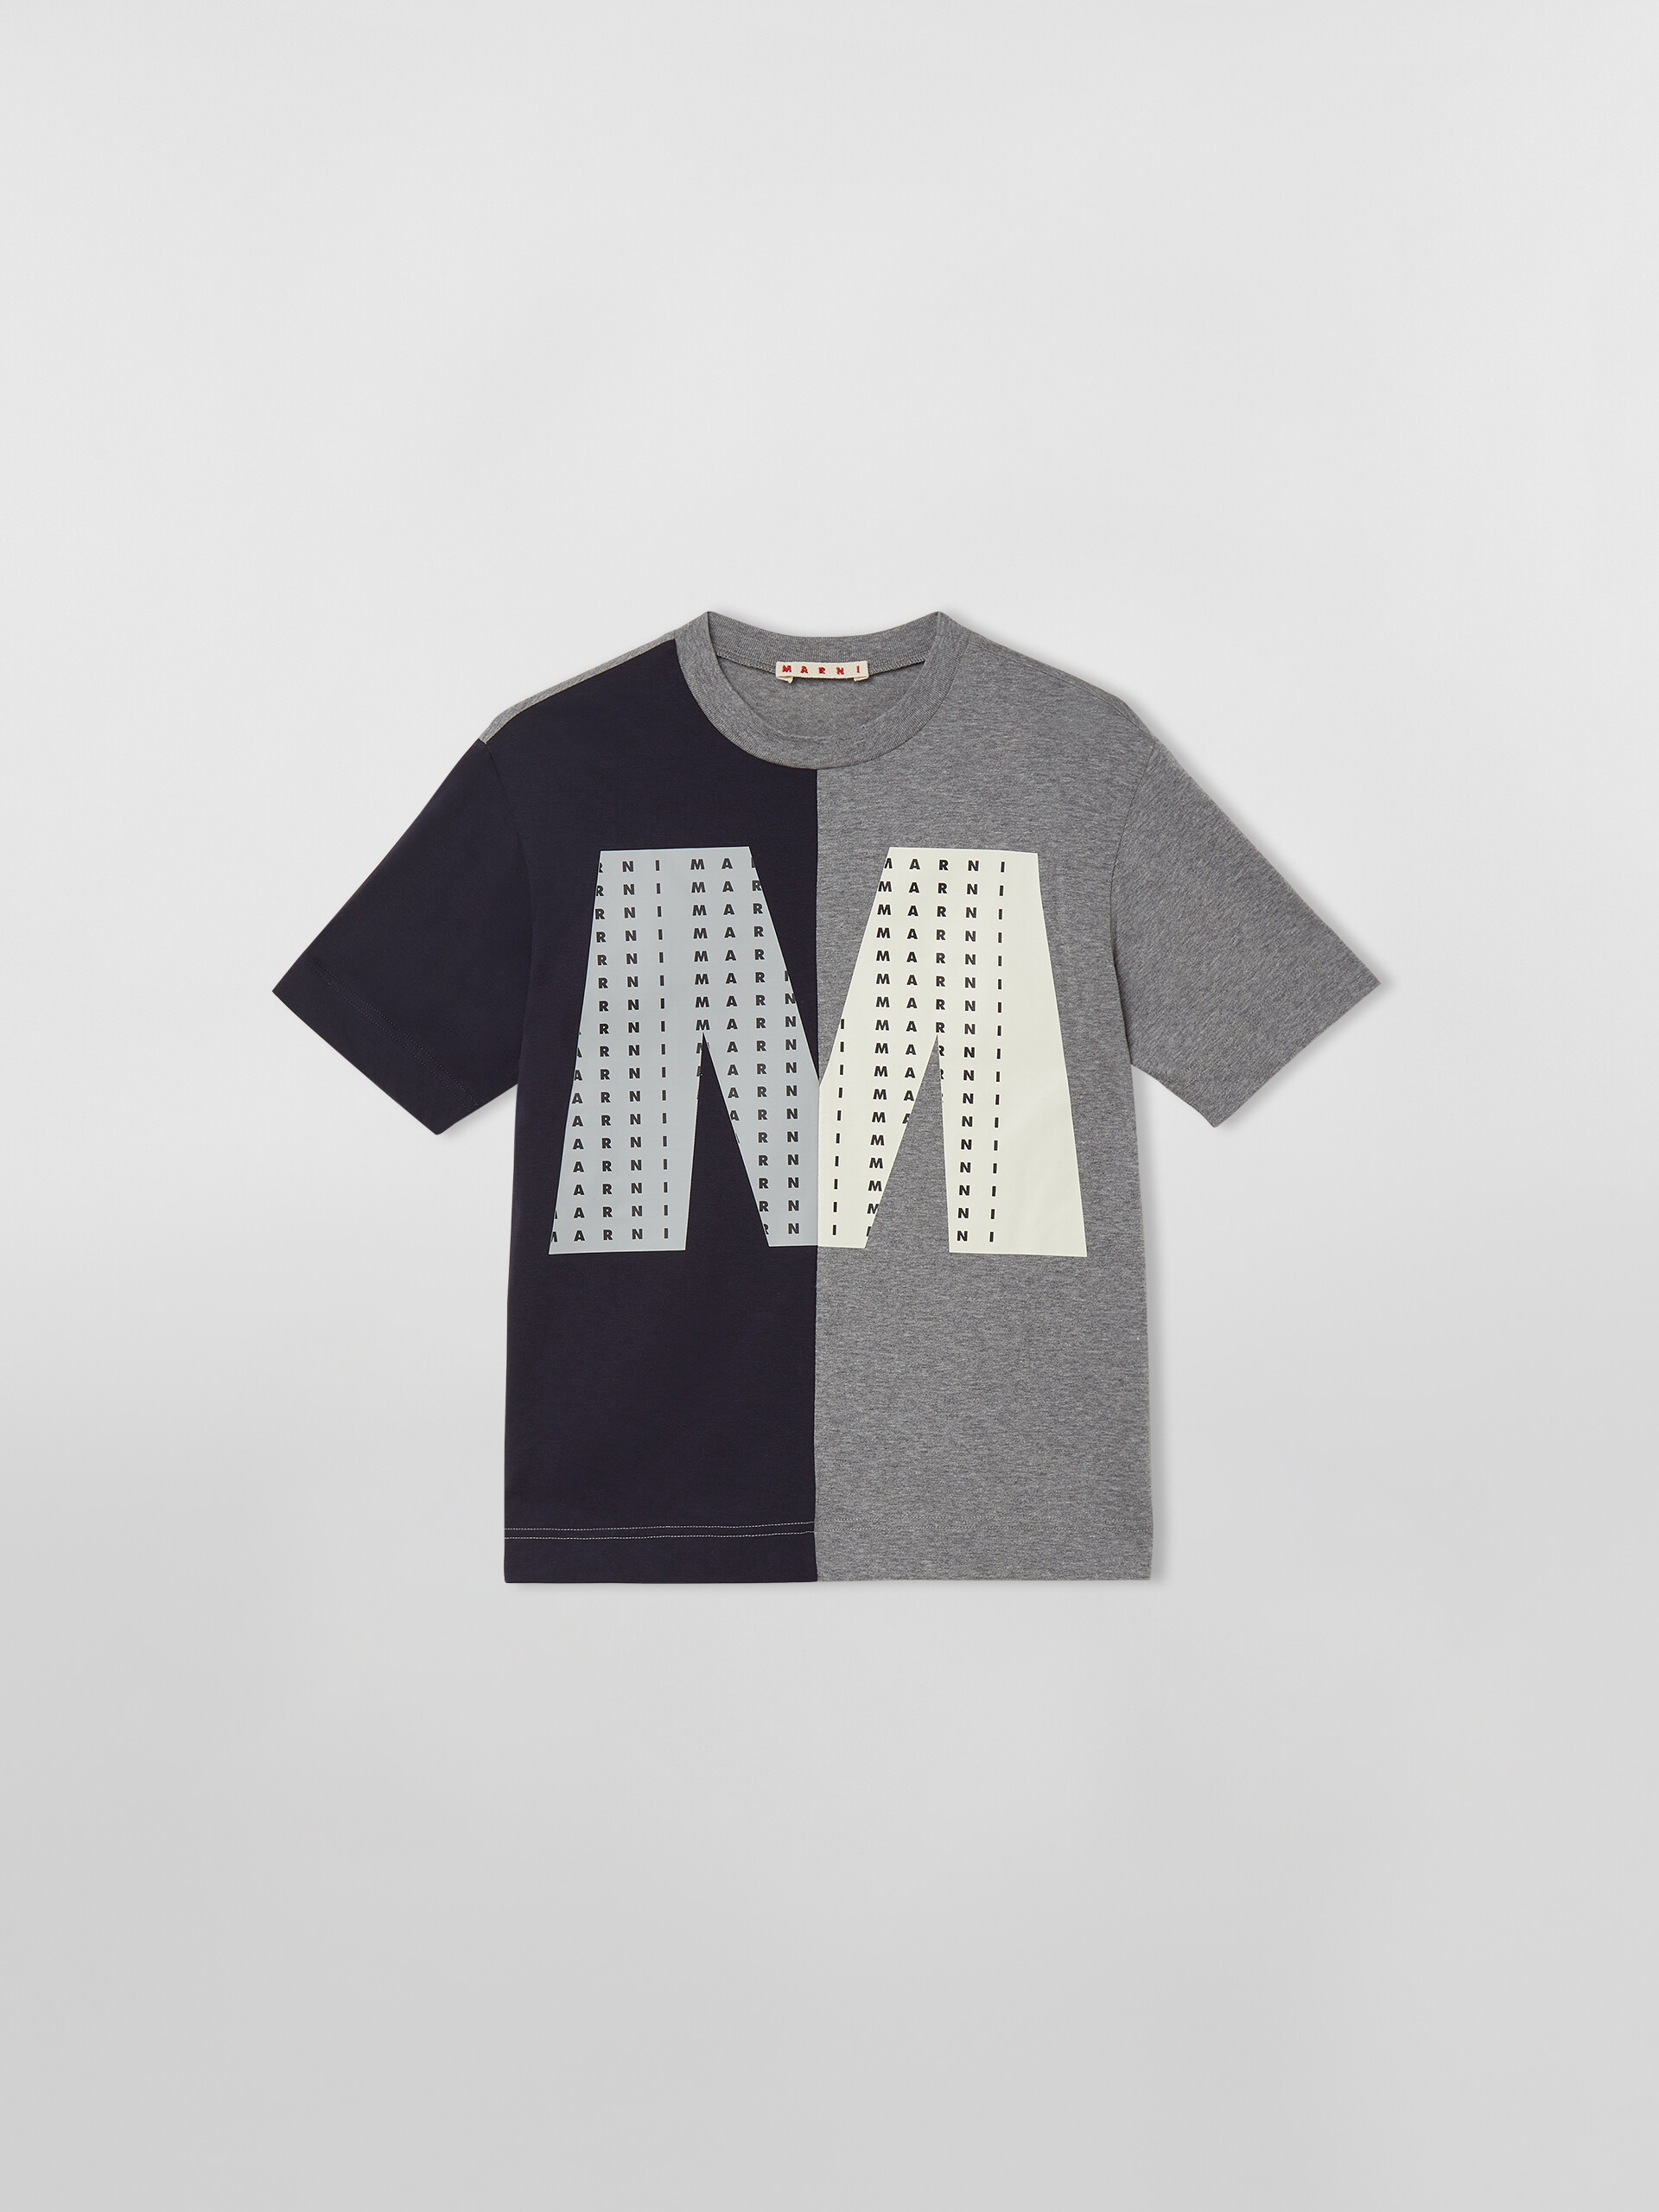 ZWEIFARBIGES T-SHIRT MIT GROSSEM „M“ AUF DER VORDERSEITE - T-shirts - Image 1